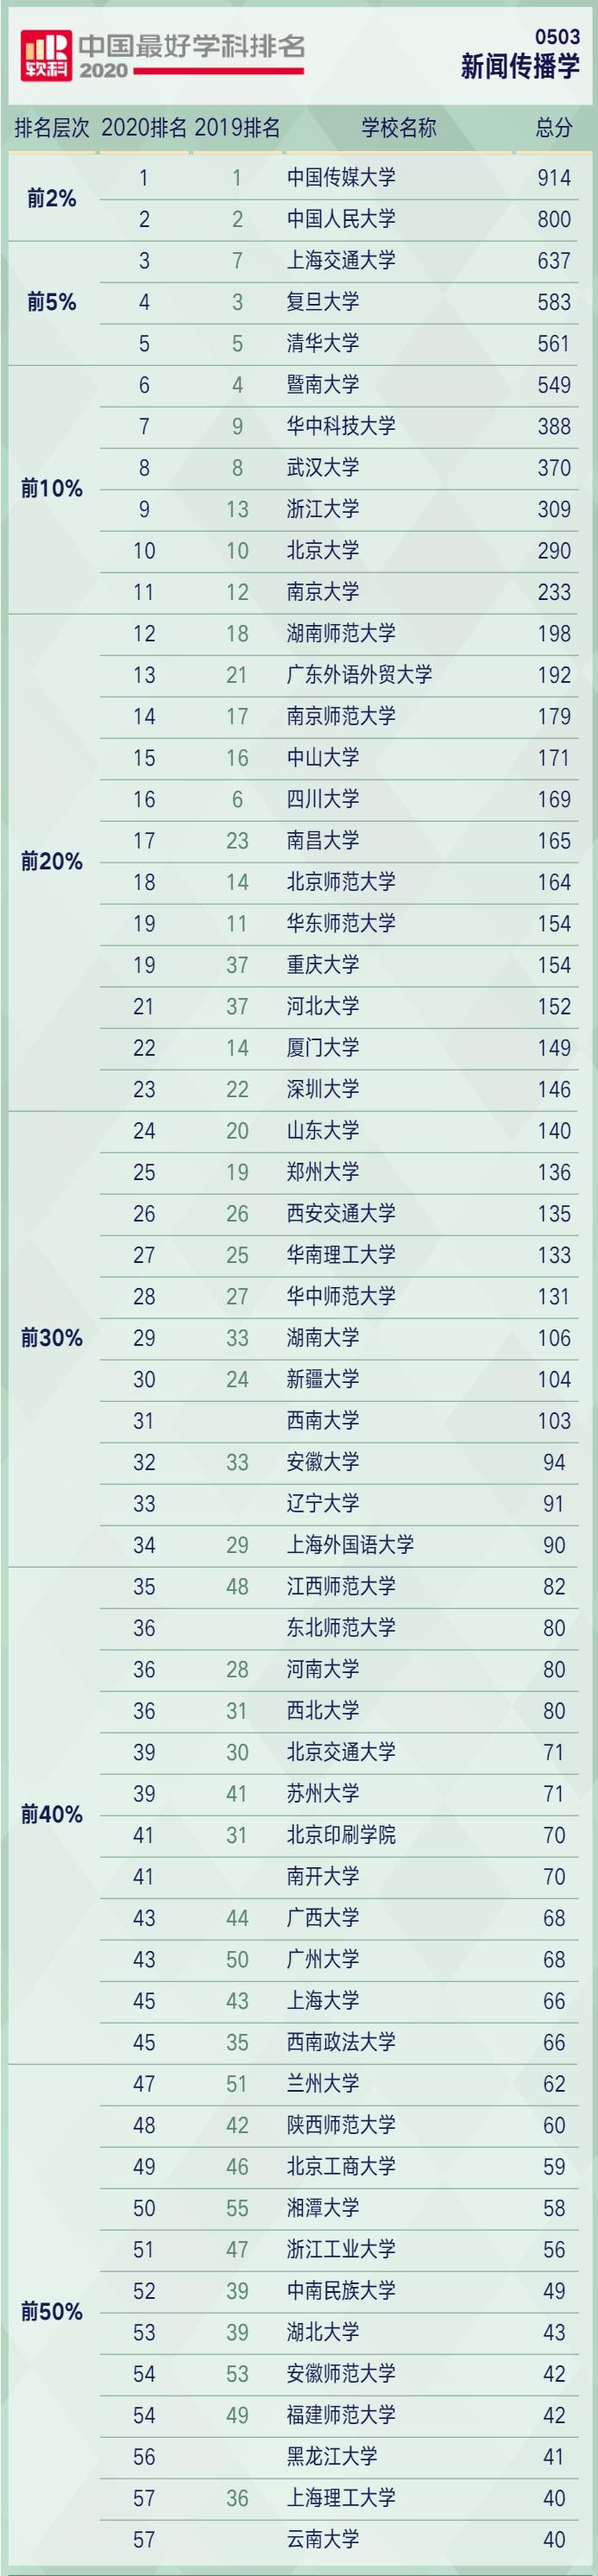 辽宁高校2020全国排-资讯搜索_2020年沈阳市最好大学排名:29所高校上榜